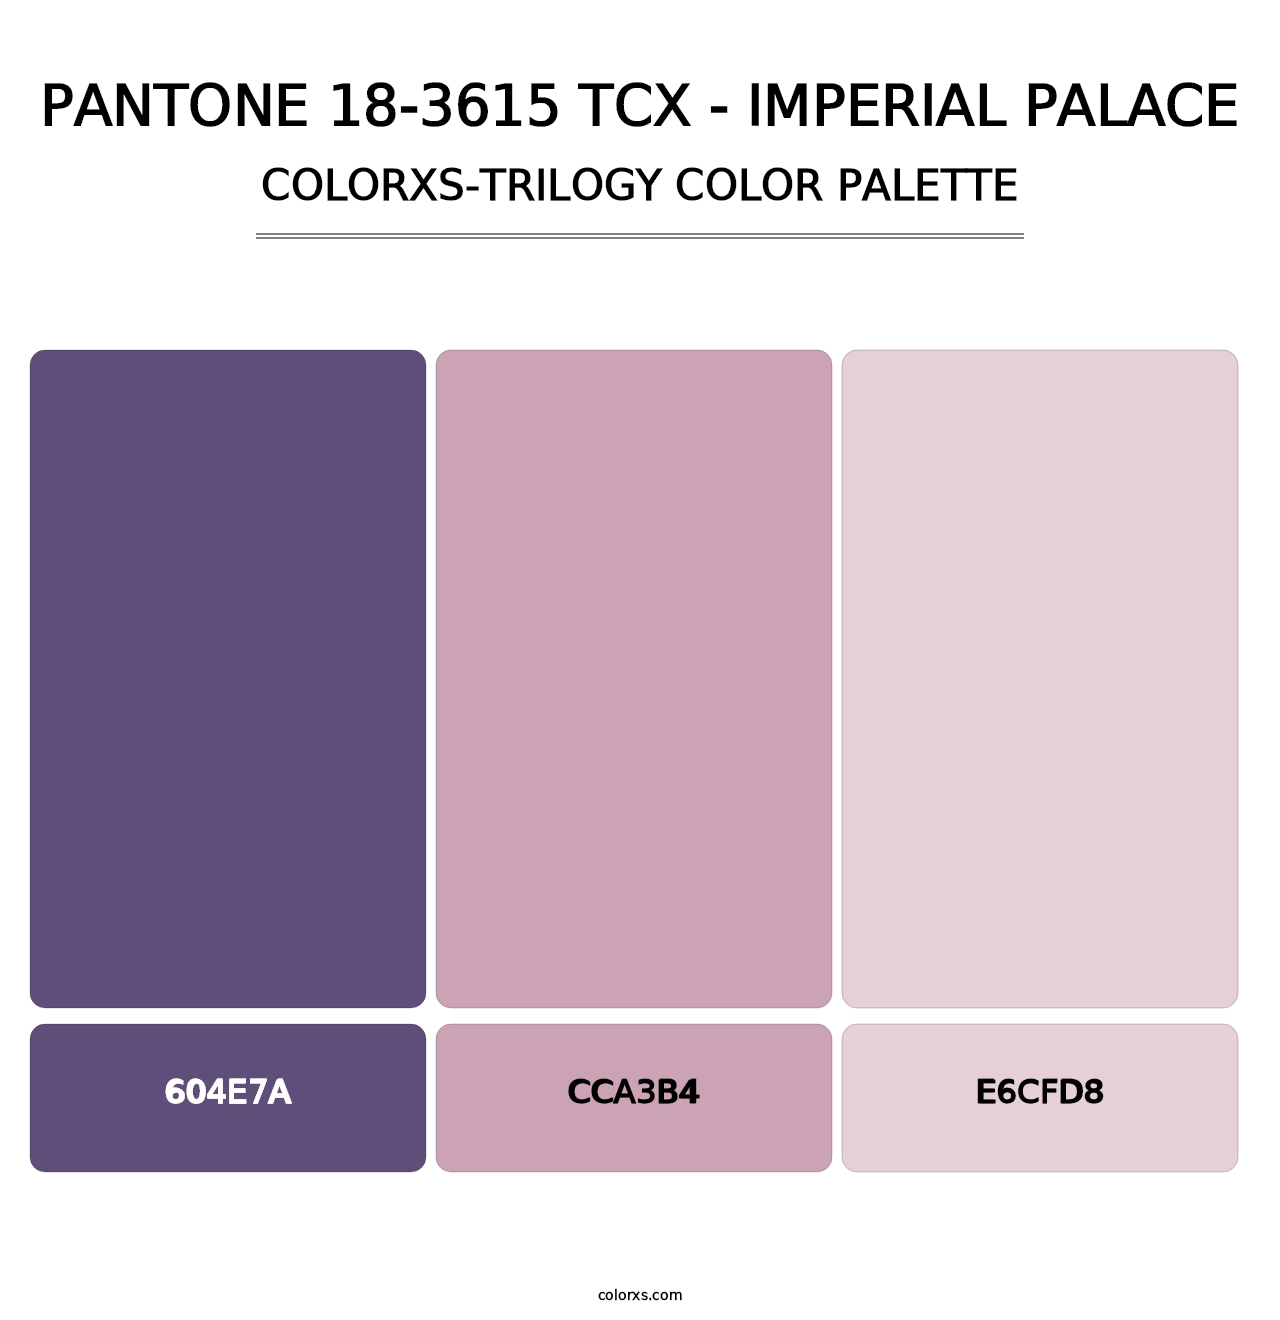 PANTONE 18-3615 TCX - Imperial Palace - Colorxs Trilogy Palette